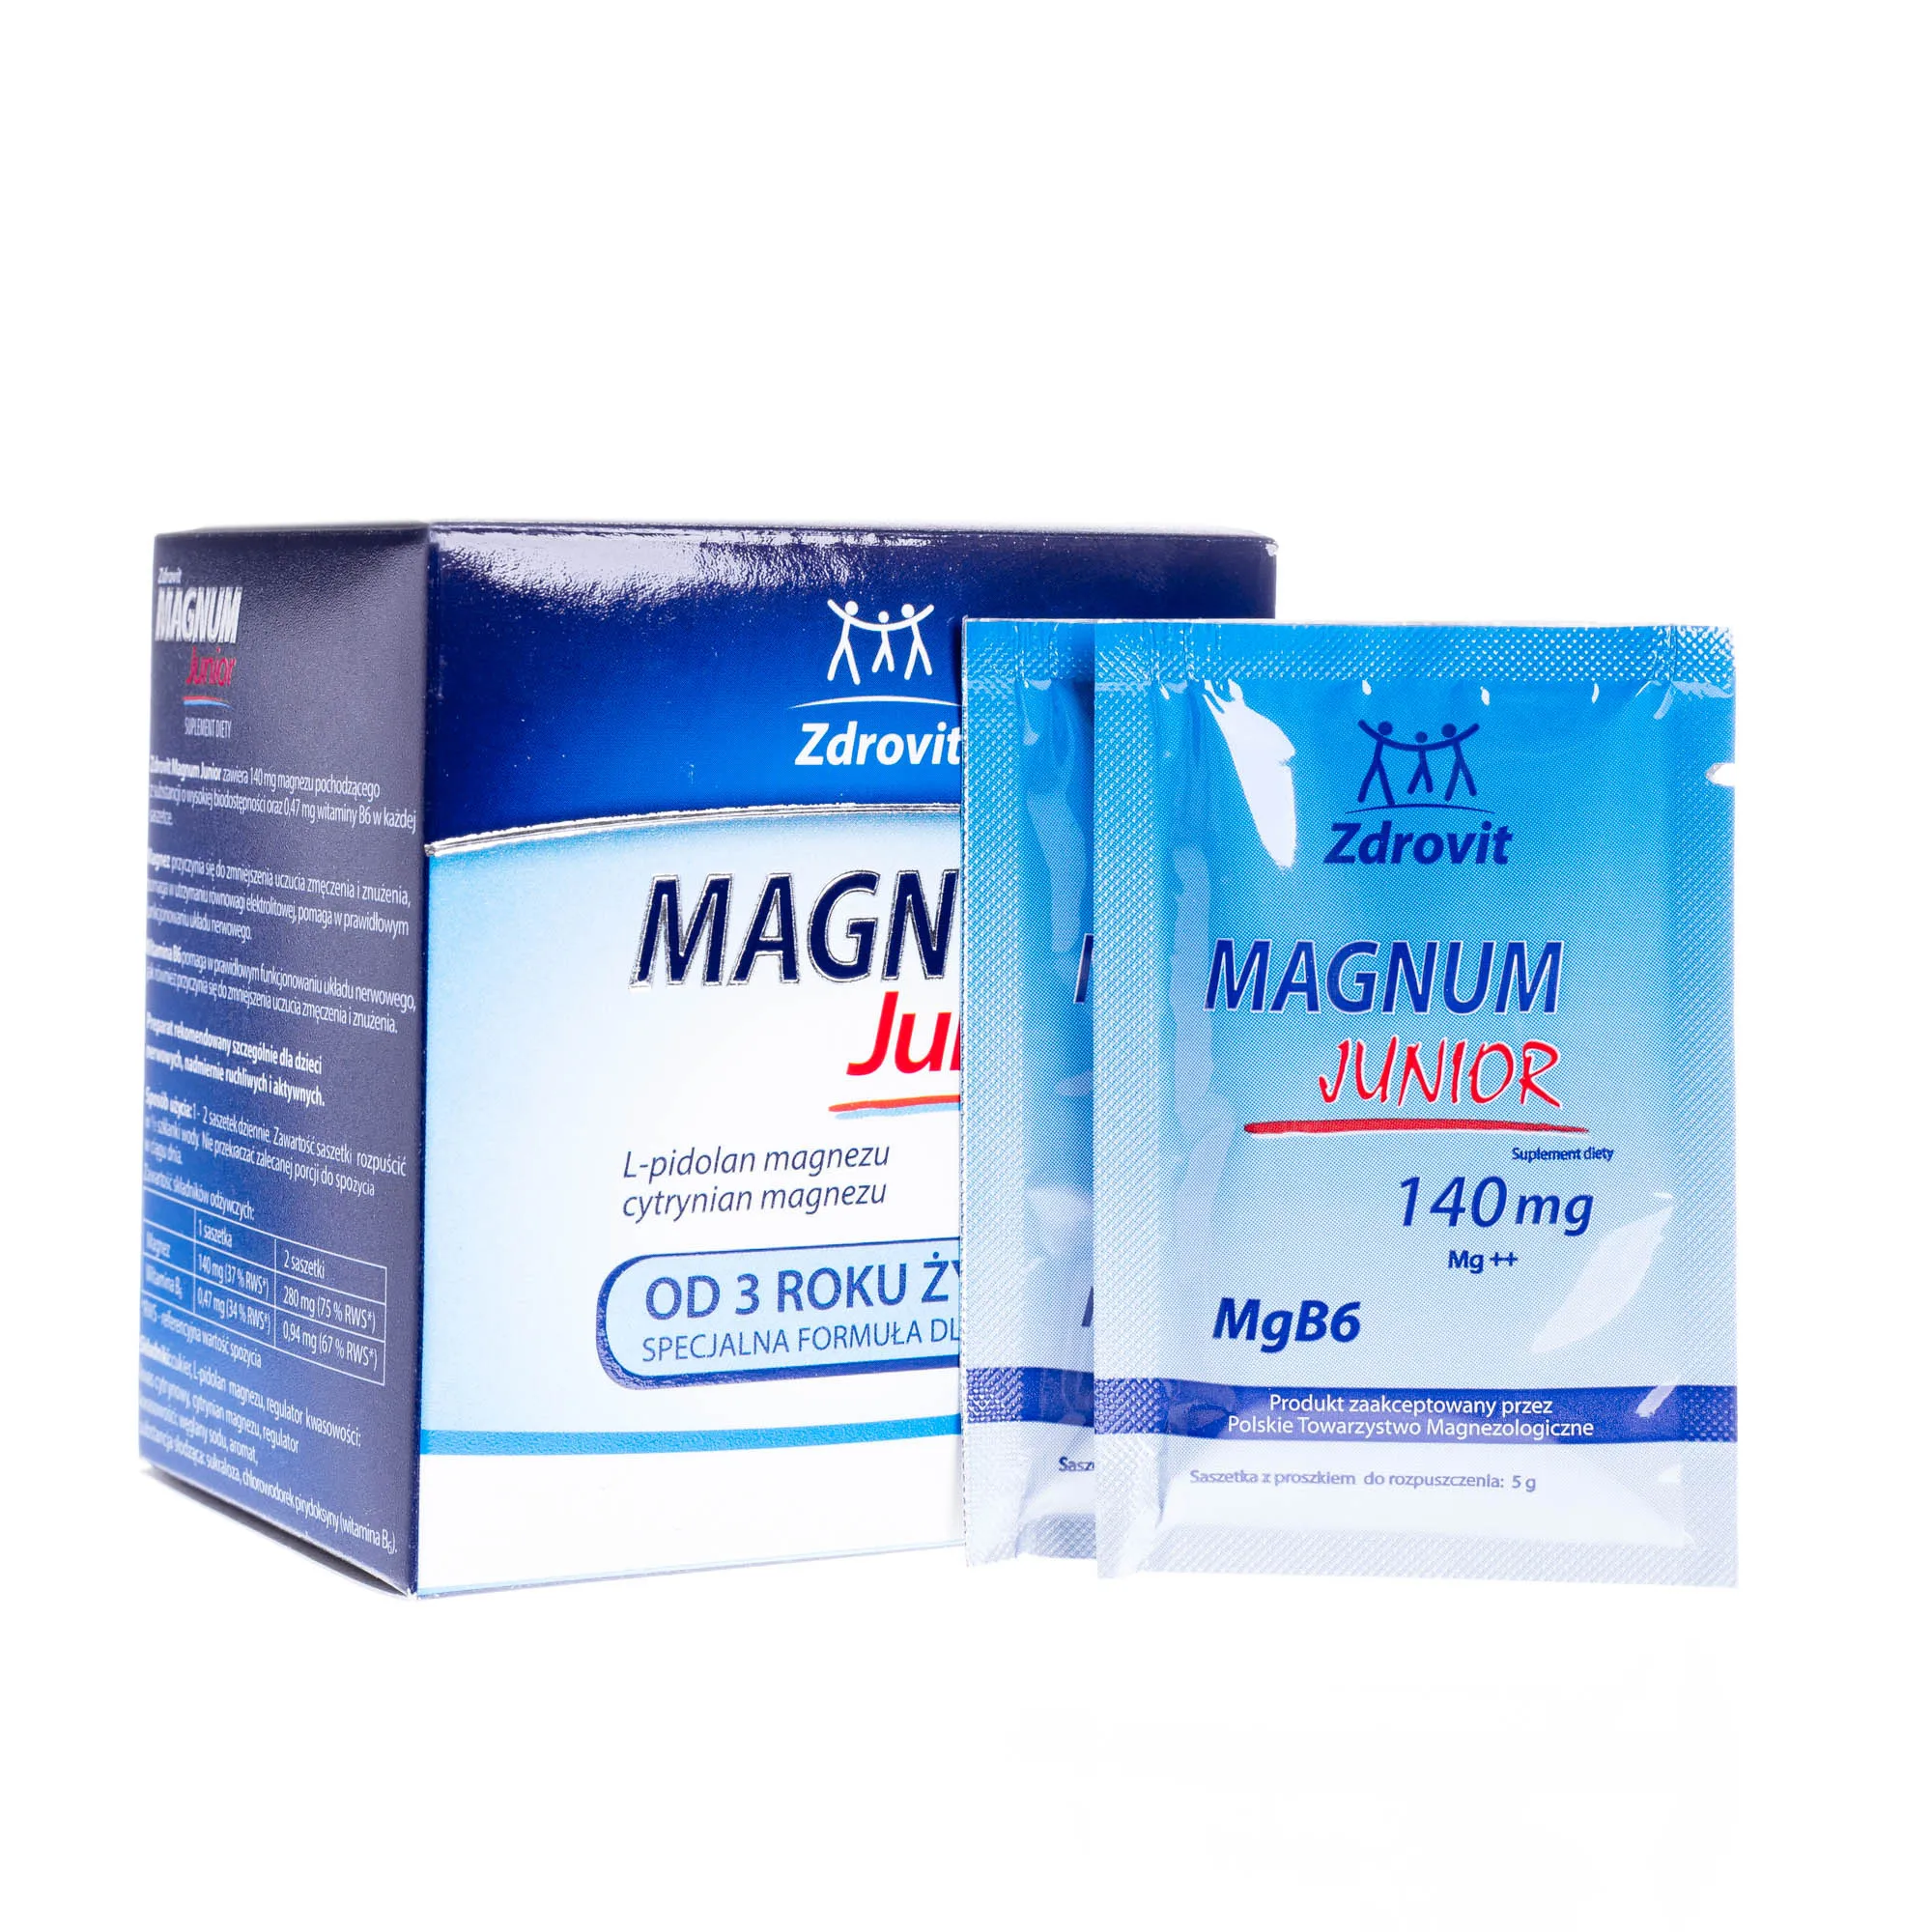 Magnum Junior suplement diety, L-pidolan magnezu, 20 saszetek 